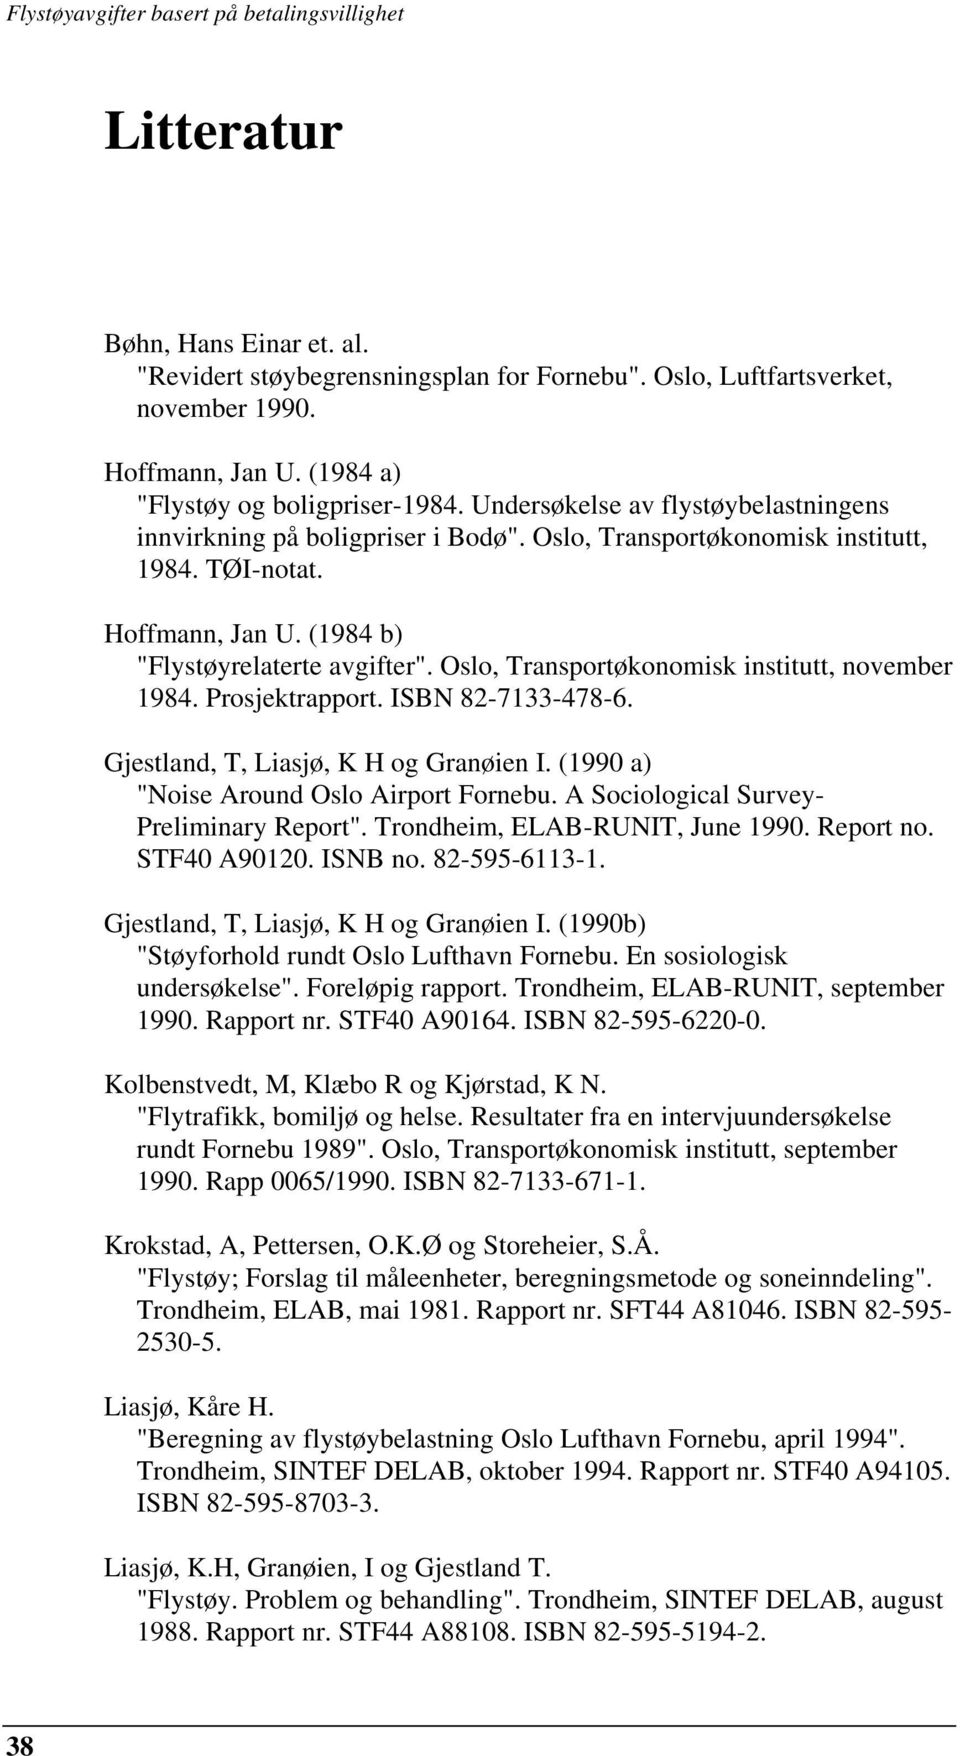 Oslo, Transportøkonomisk institutt, november 1984. Prosjektrapport. ISBN 82-7133-478-6. Gjestland, T, Liasjø, K H og Granøien I. (1990 a) "Noise Around Oslo Airport Fornebu.